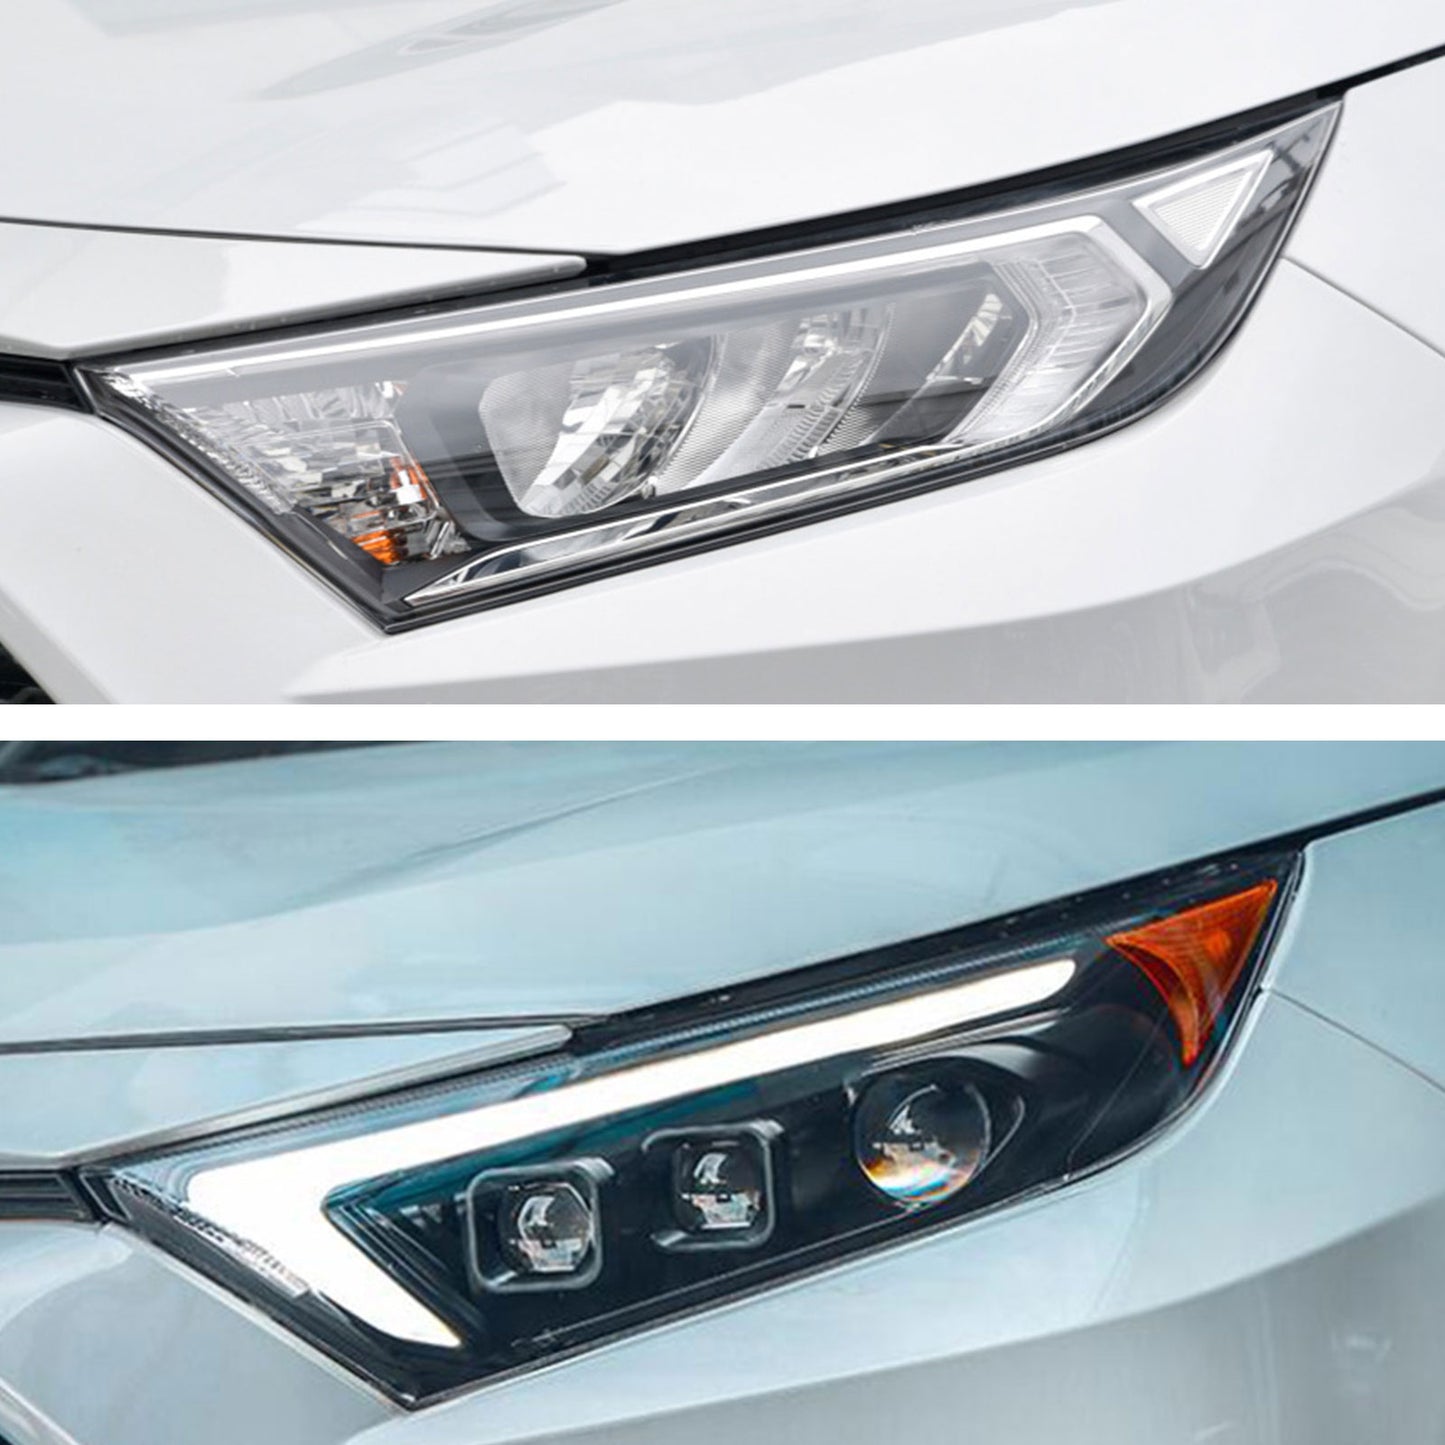 JOLUNG Full LED Headlights Assembly For Toyota RAV4 2019-2022